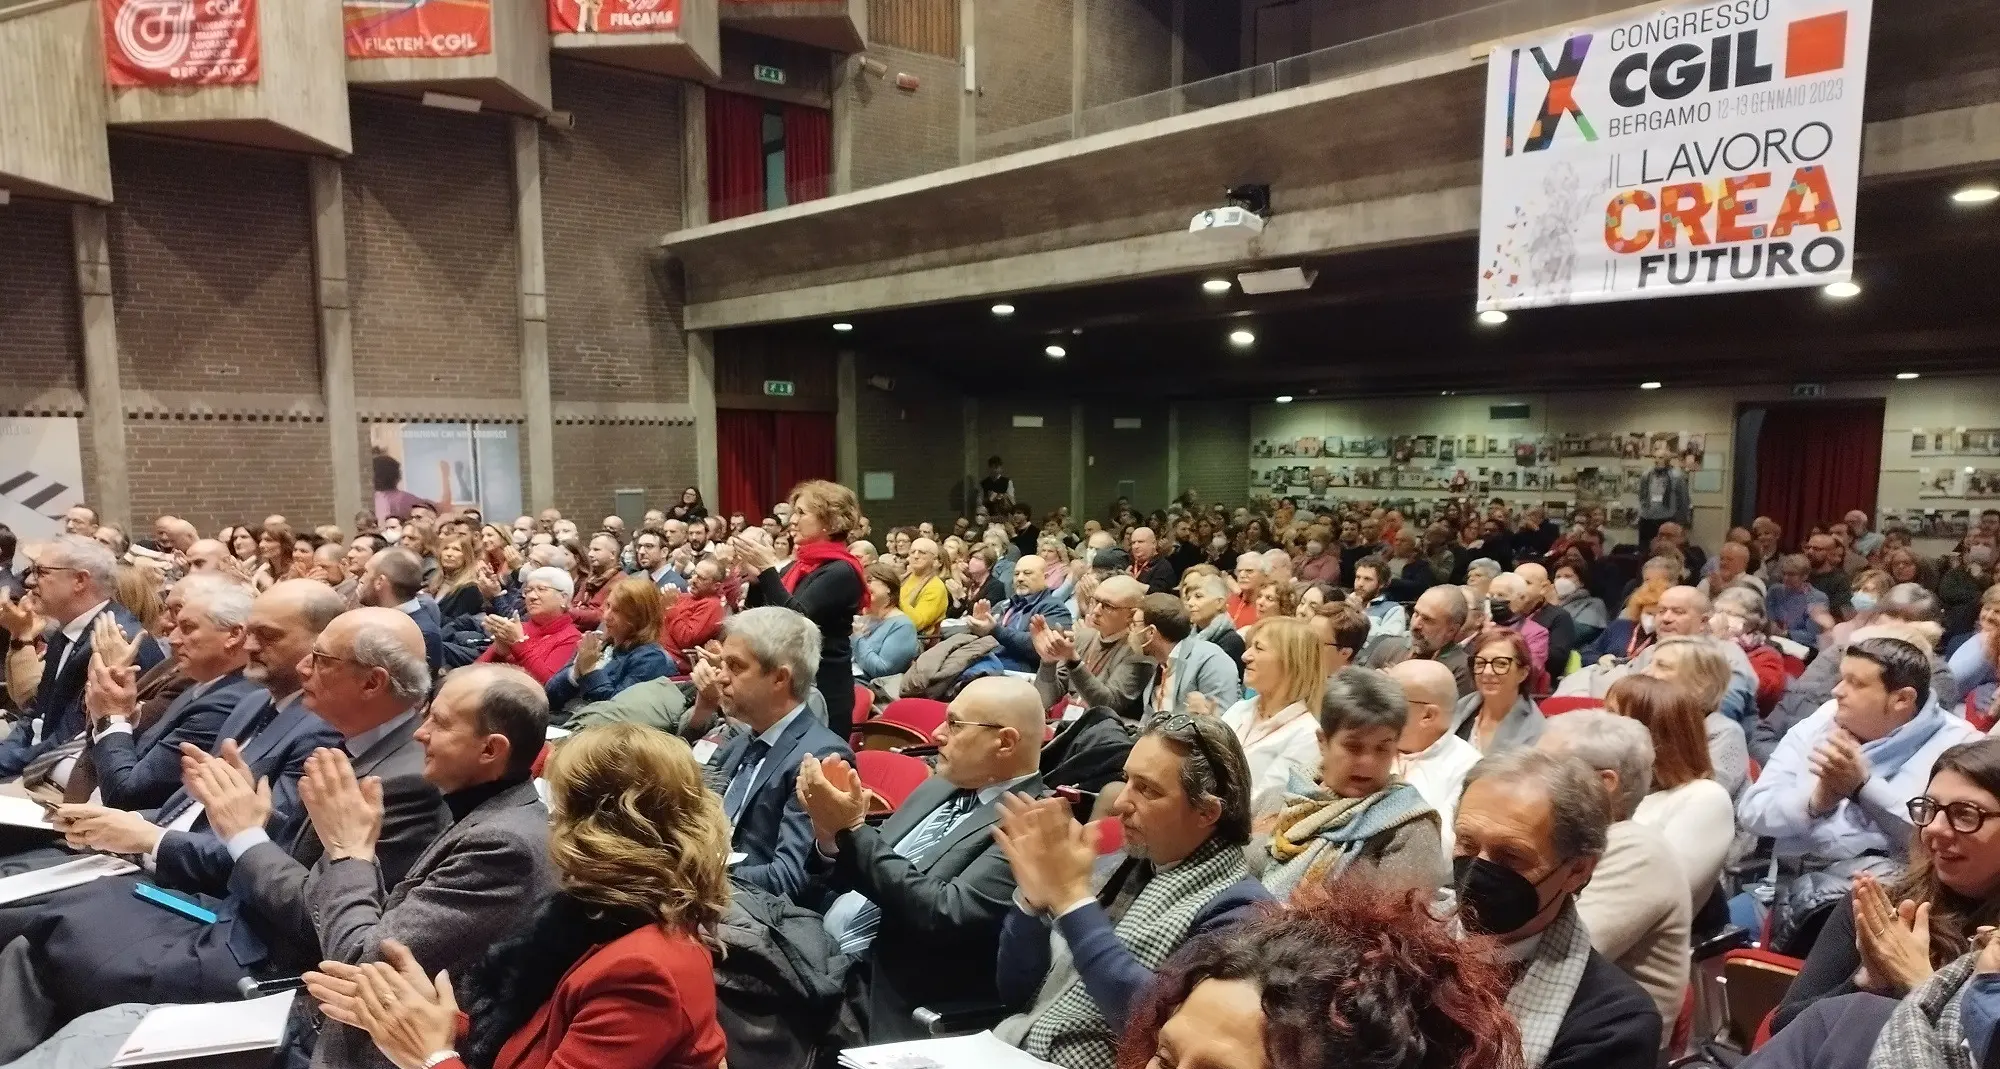 La Cgil di Bergamo a congresso